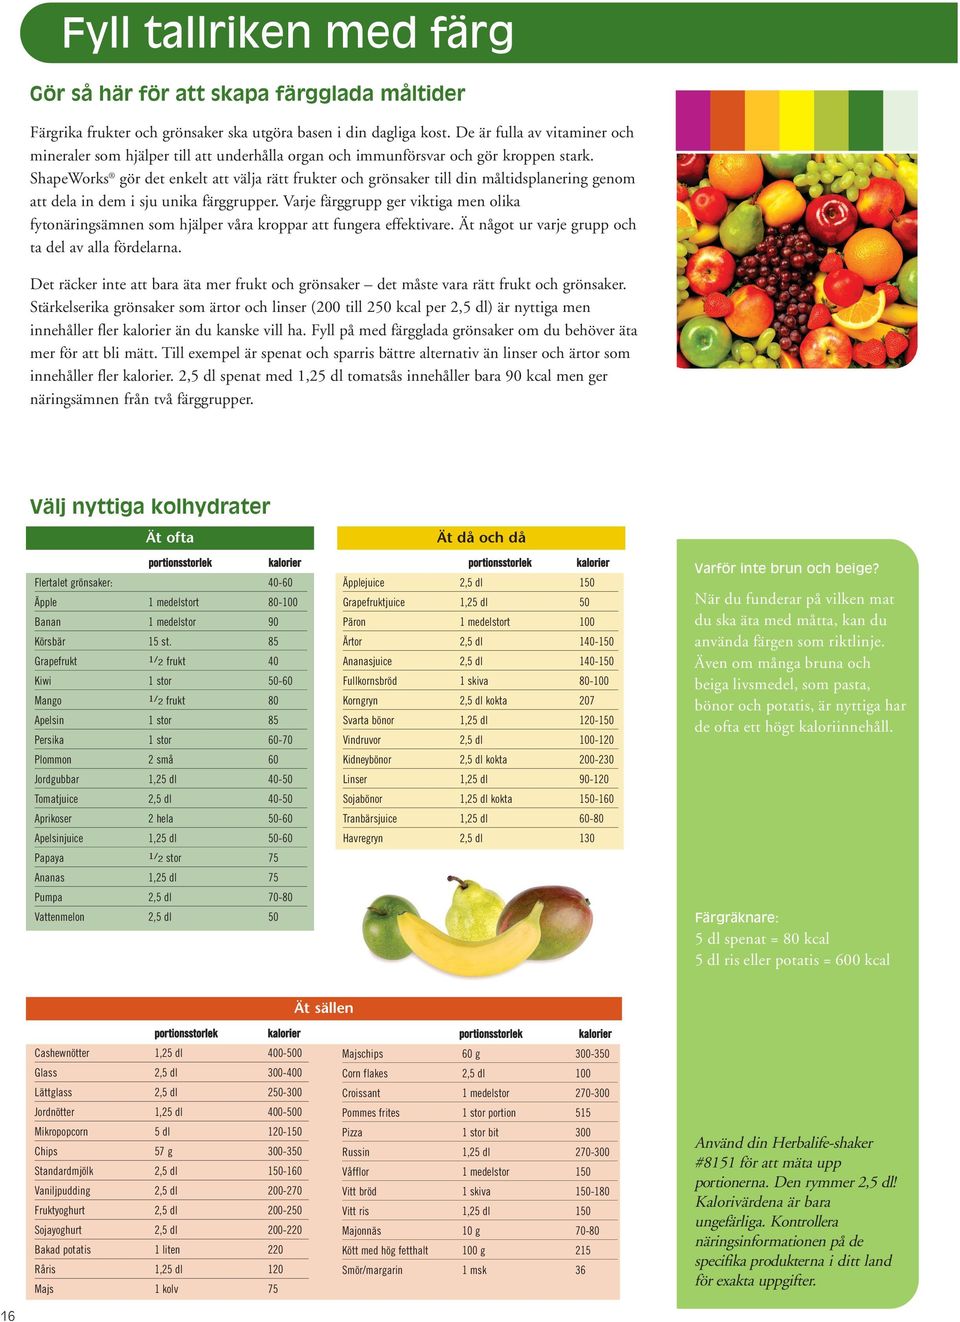 ShapeWorks gör det enkelt att välja rätt frukter och grönsaker till din måltidsplanering genom att dela in dem i sju unika färggrupper.